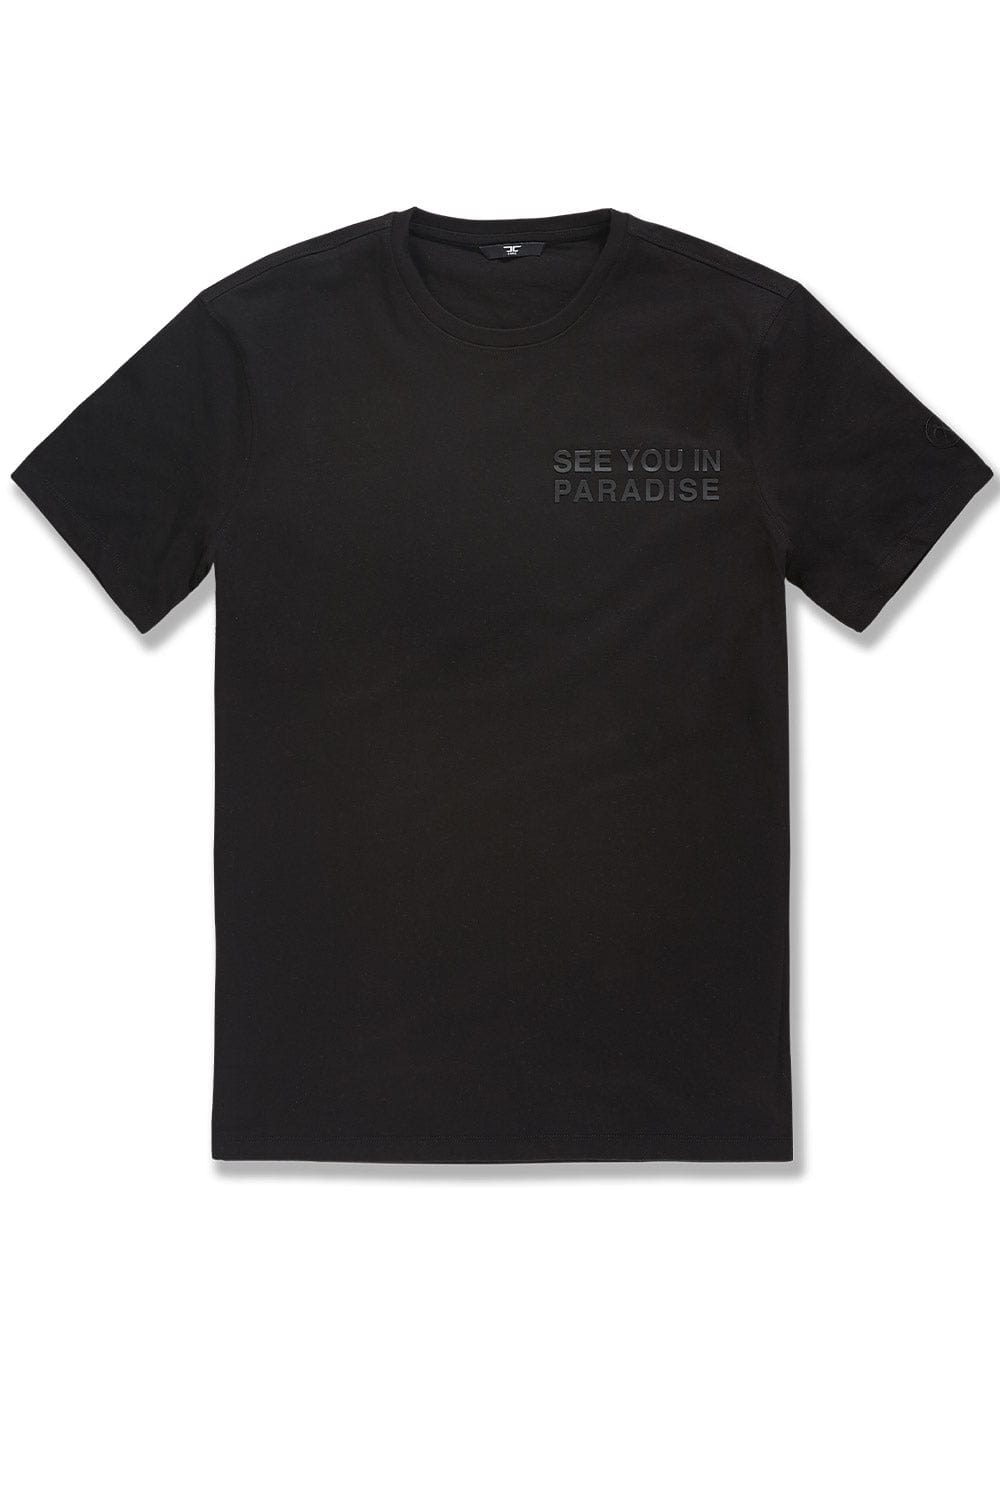 Jordan Craig Paradise Tonal T-Shirt S / Black